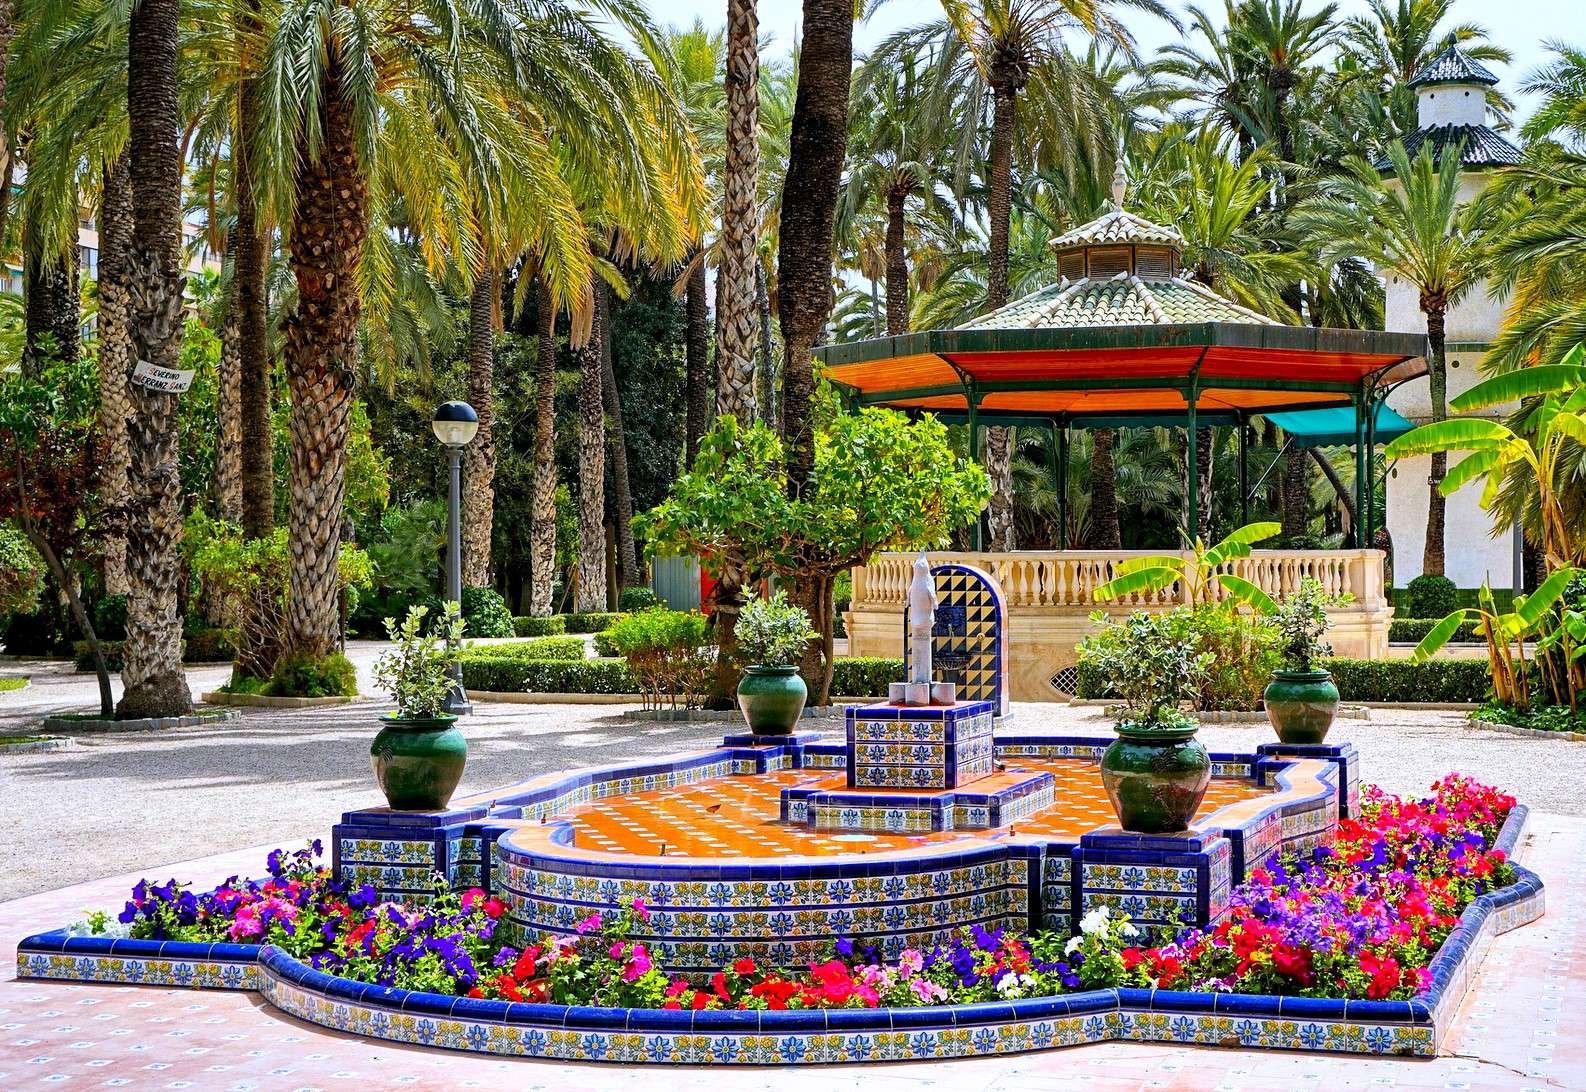 Fontana decorativa con gazebo nel parco (Spagna) puzzle online